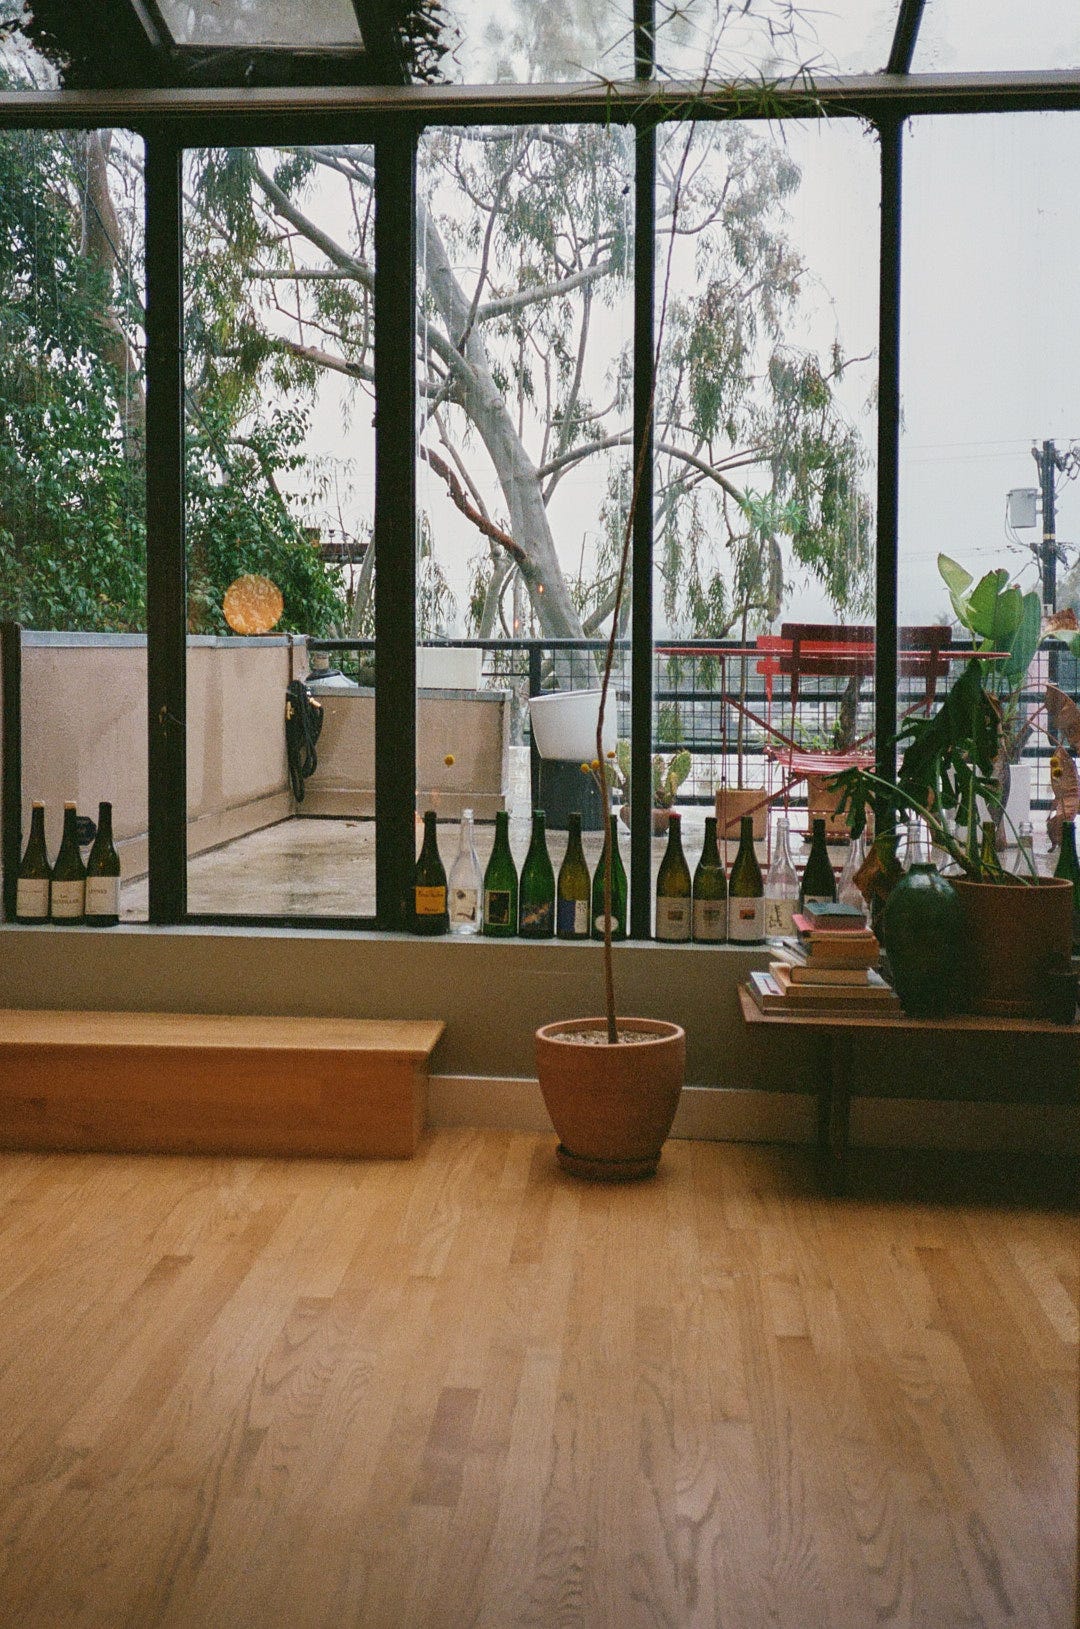 Empty wine bottles on the windowsill